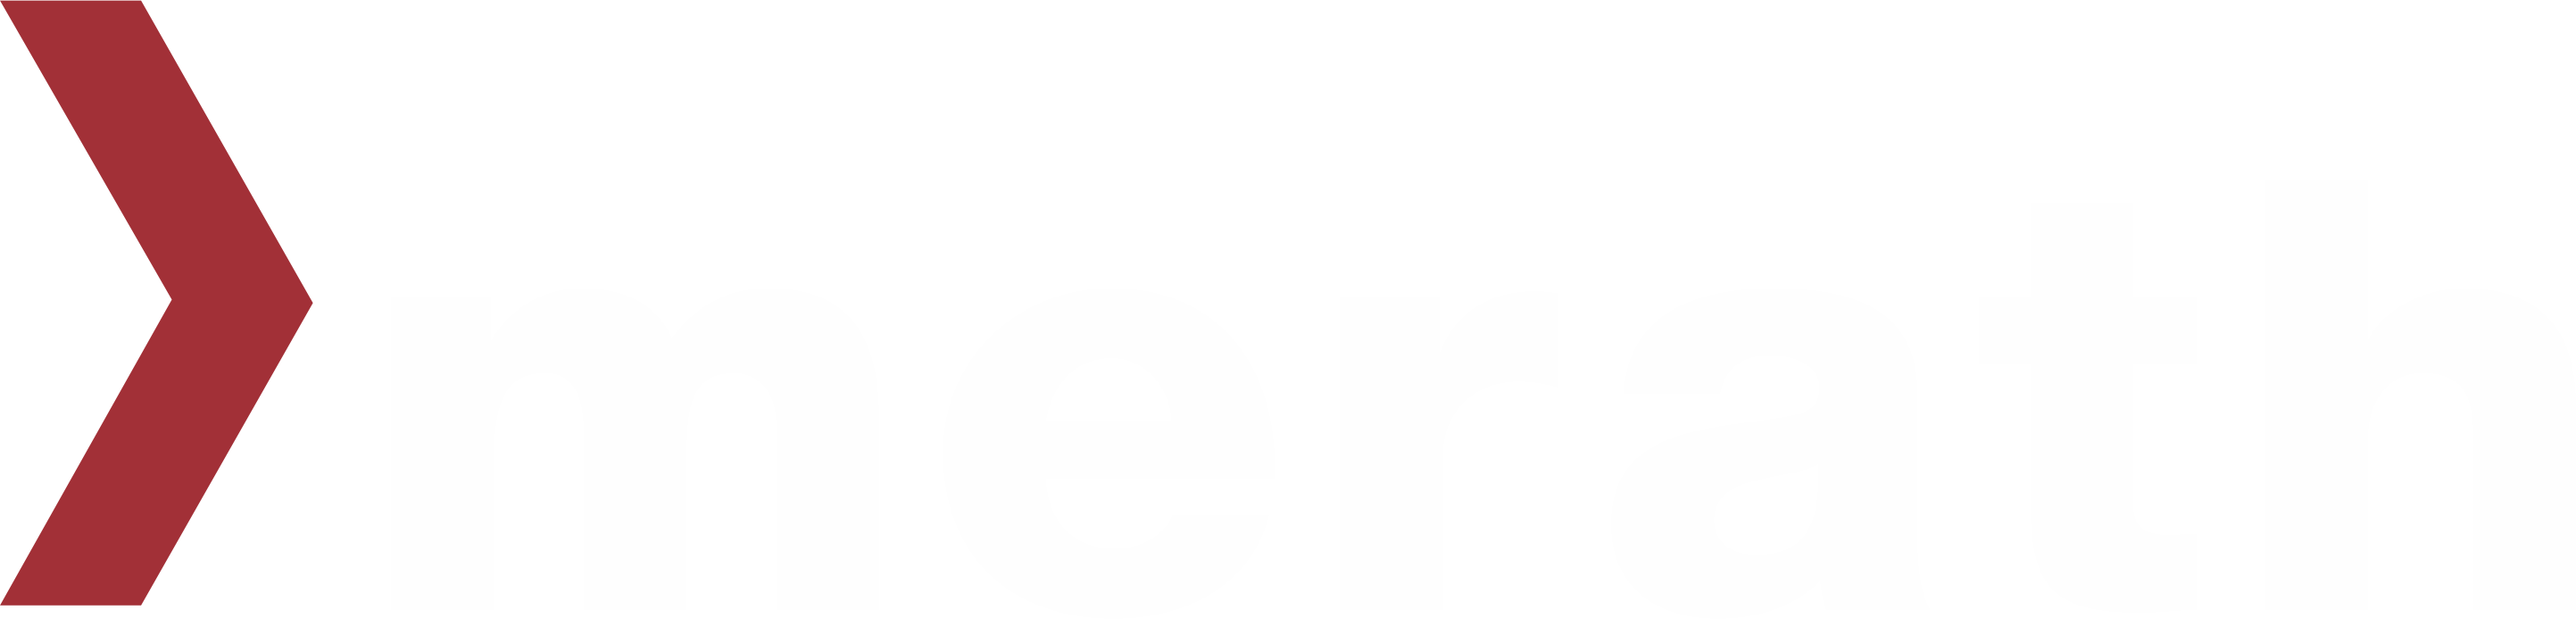 merath Logo mit weißer Schrift